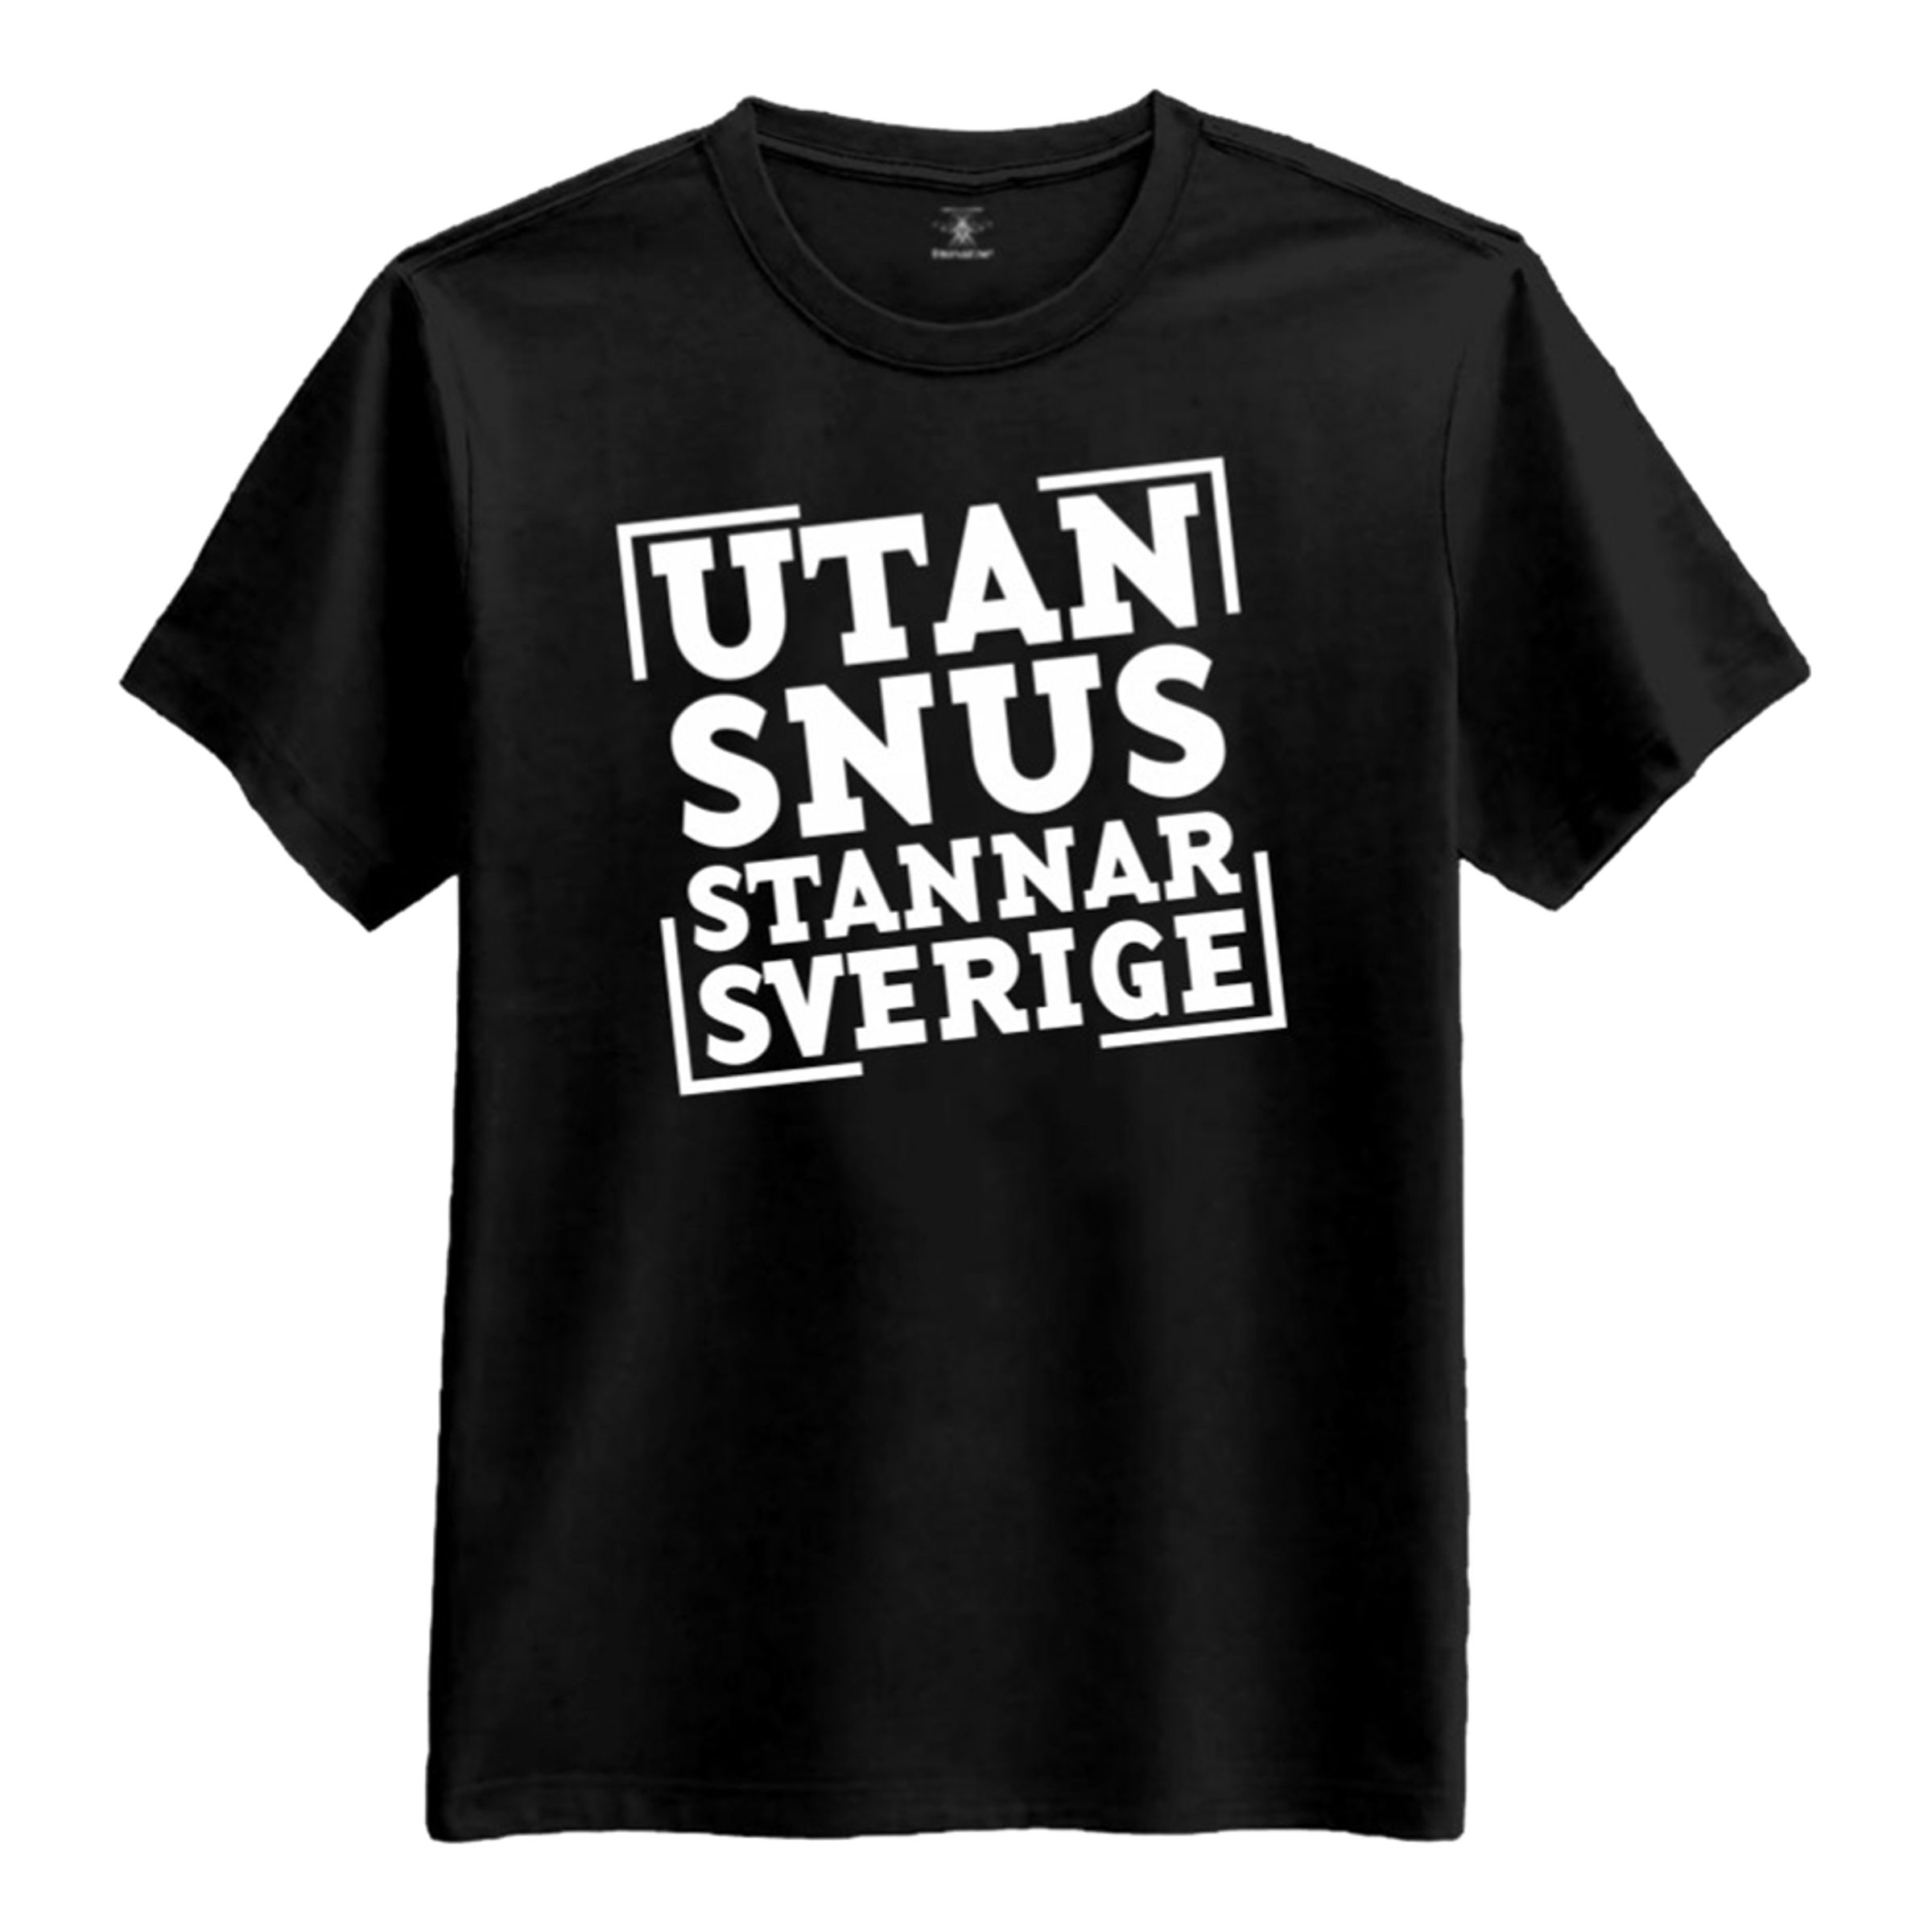 Utan Snus Stannar Sverige T-shirt - X-Large